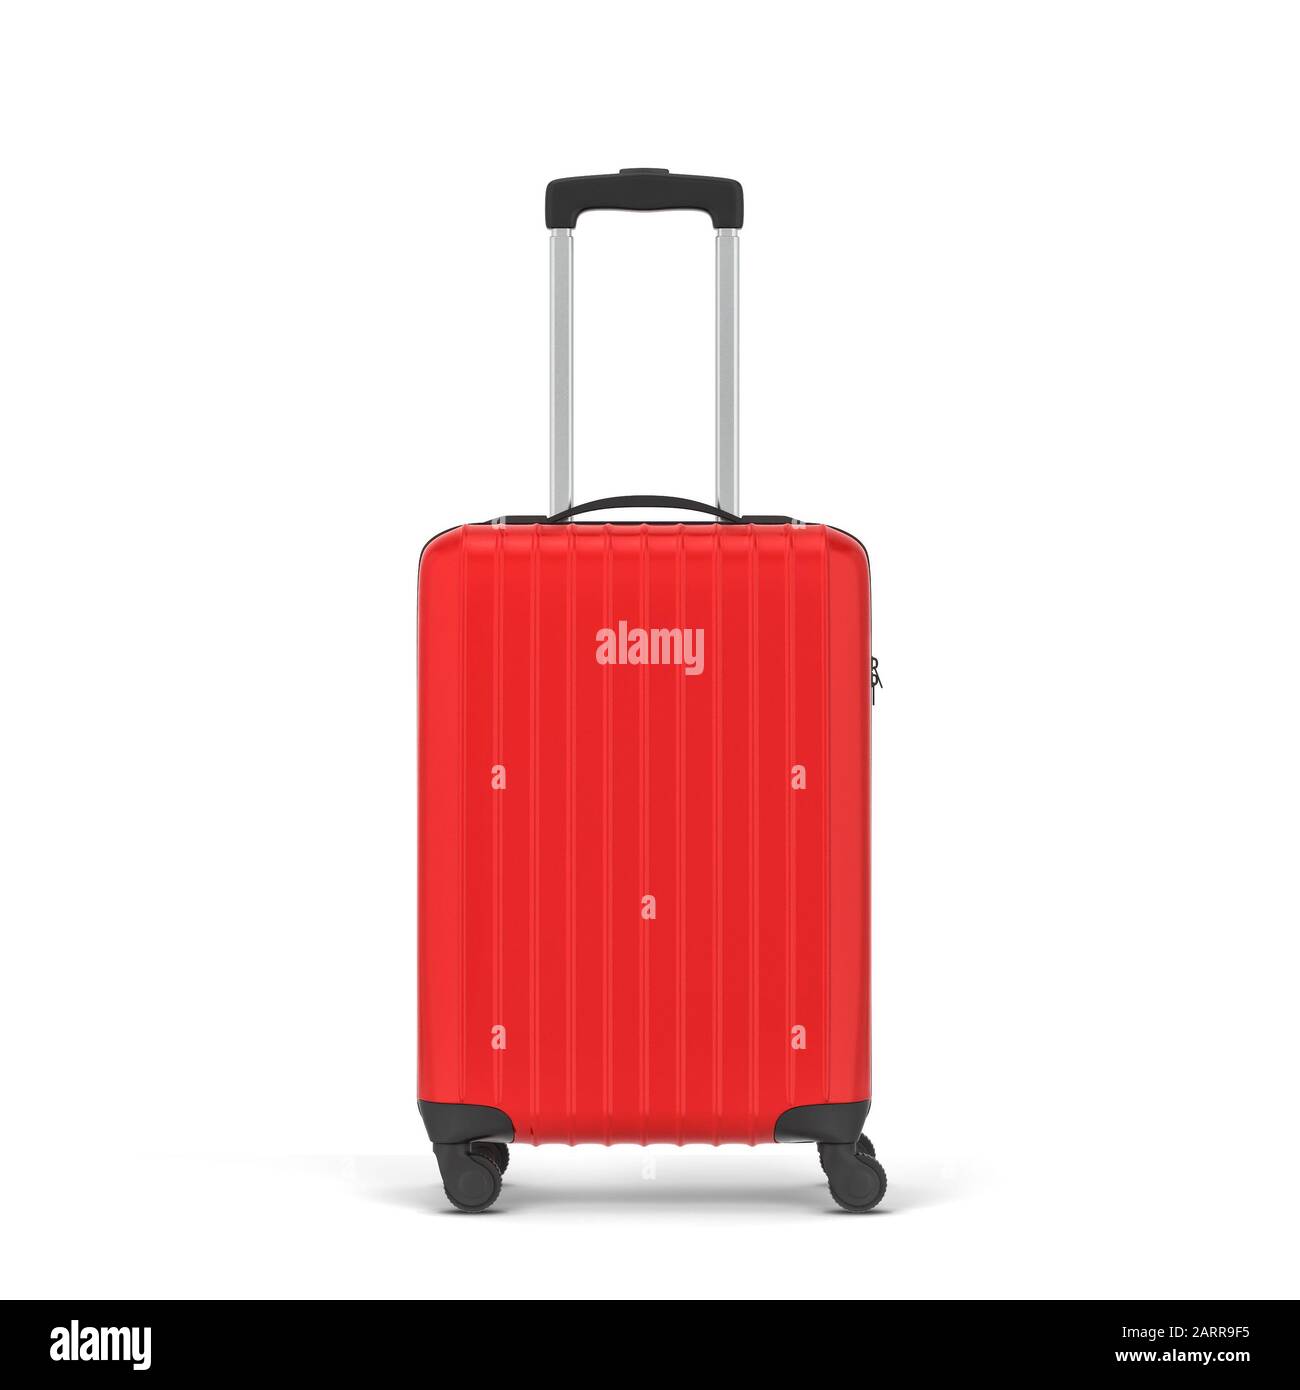 Plastic travel suitcase. 3d illustration isolated on white background Stock Photo